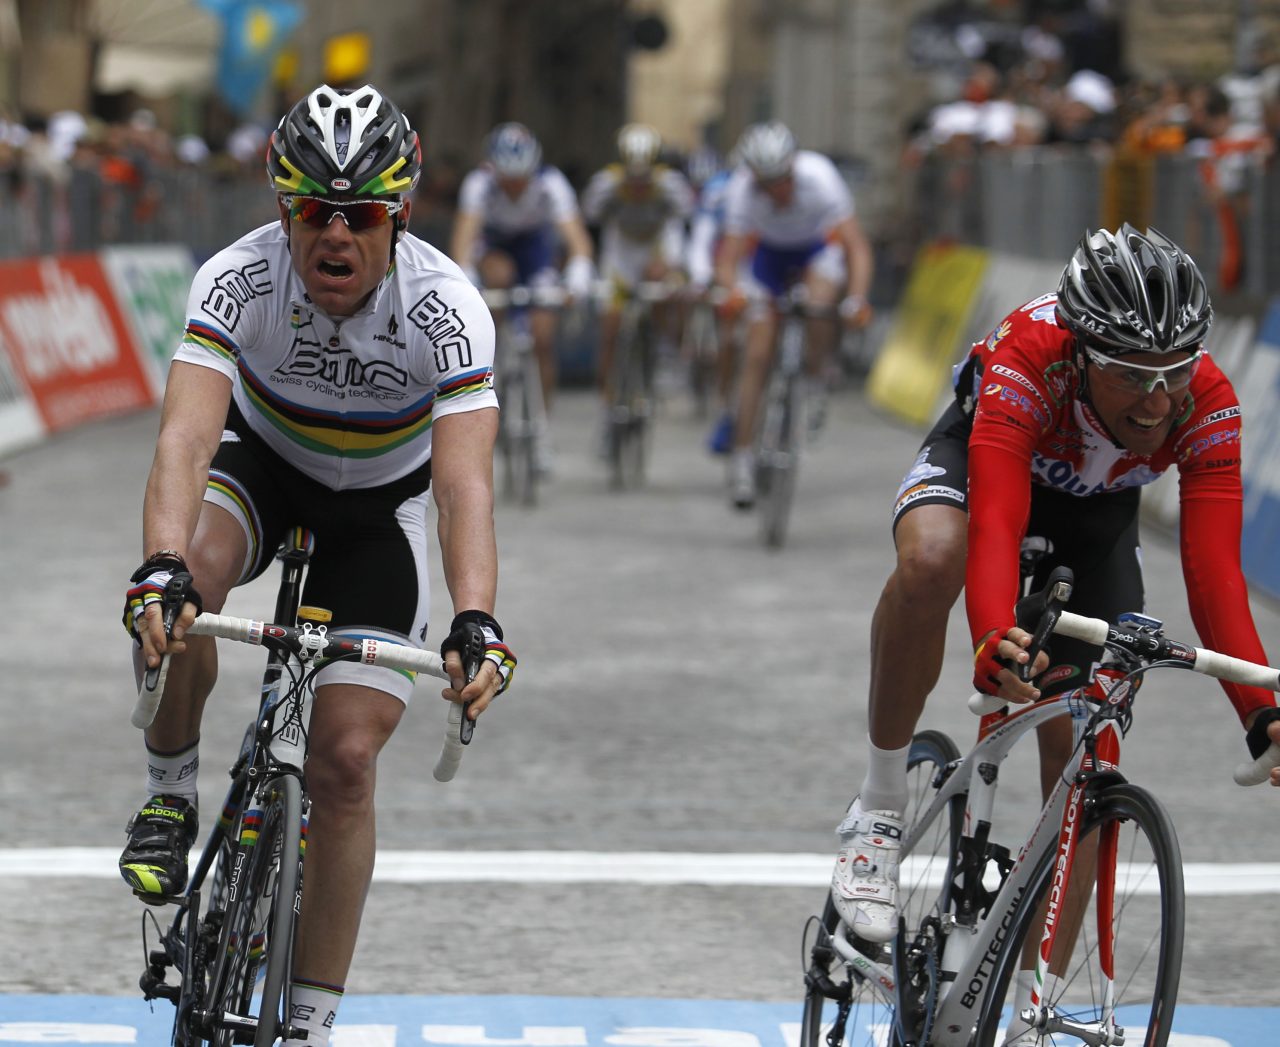 L'quipe BMC Racing ravie de l'invitation au Giro d'Italia